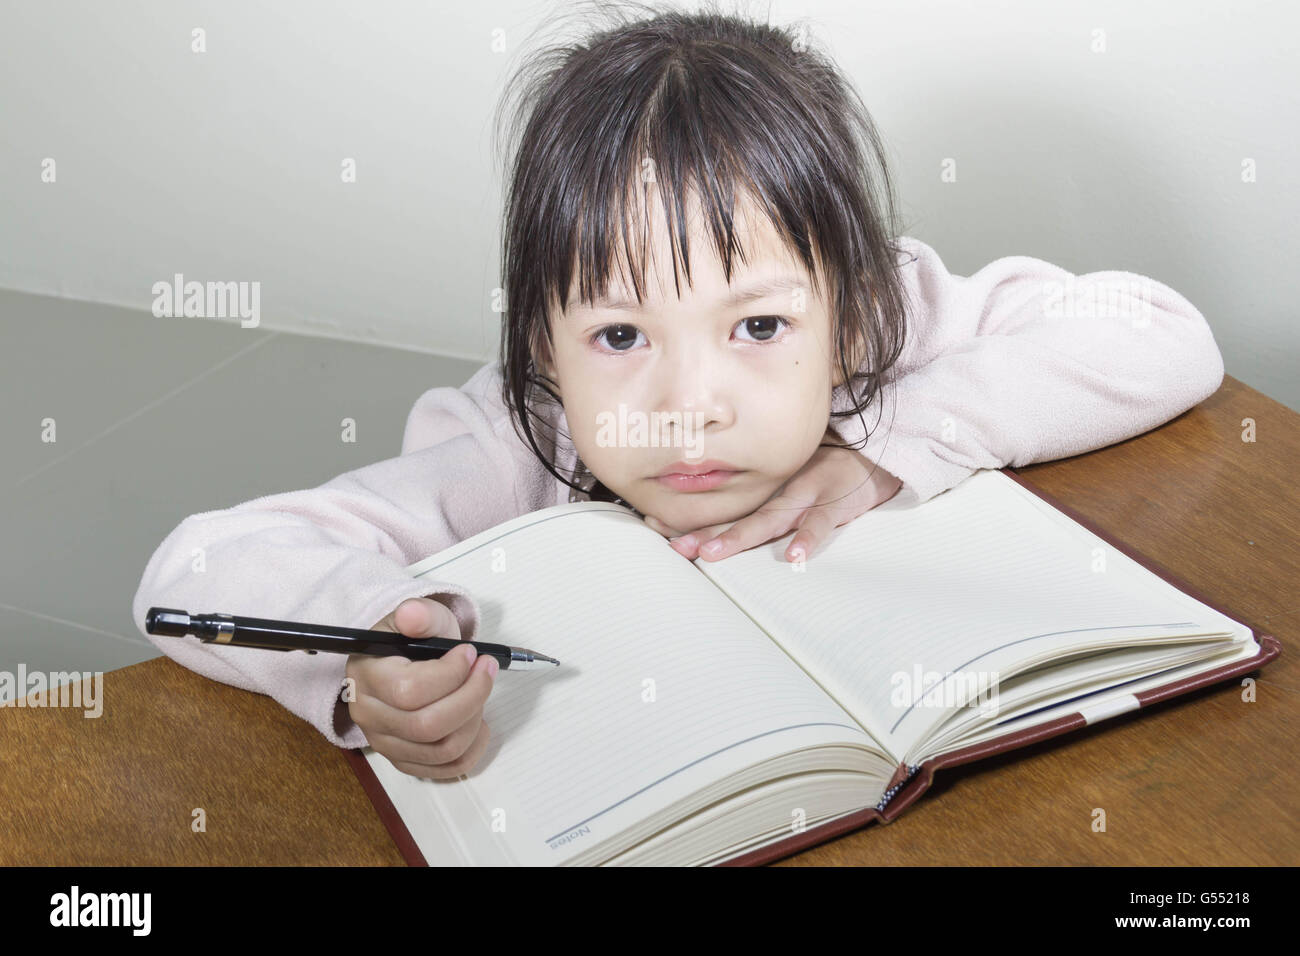 Asiatische Mädchen Kind hart bei der Arbeit im Raum sitzt mit seinem Kopf auf ihre Hand Schreiben von Notizen auf Buch White papers Stockfoto